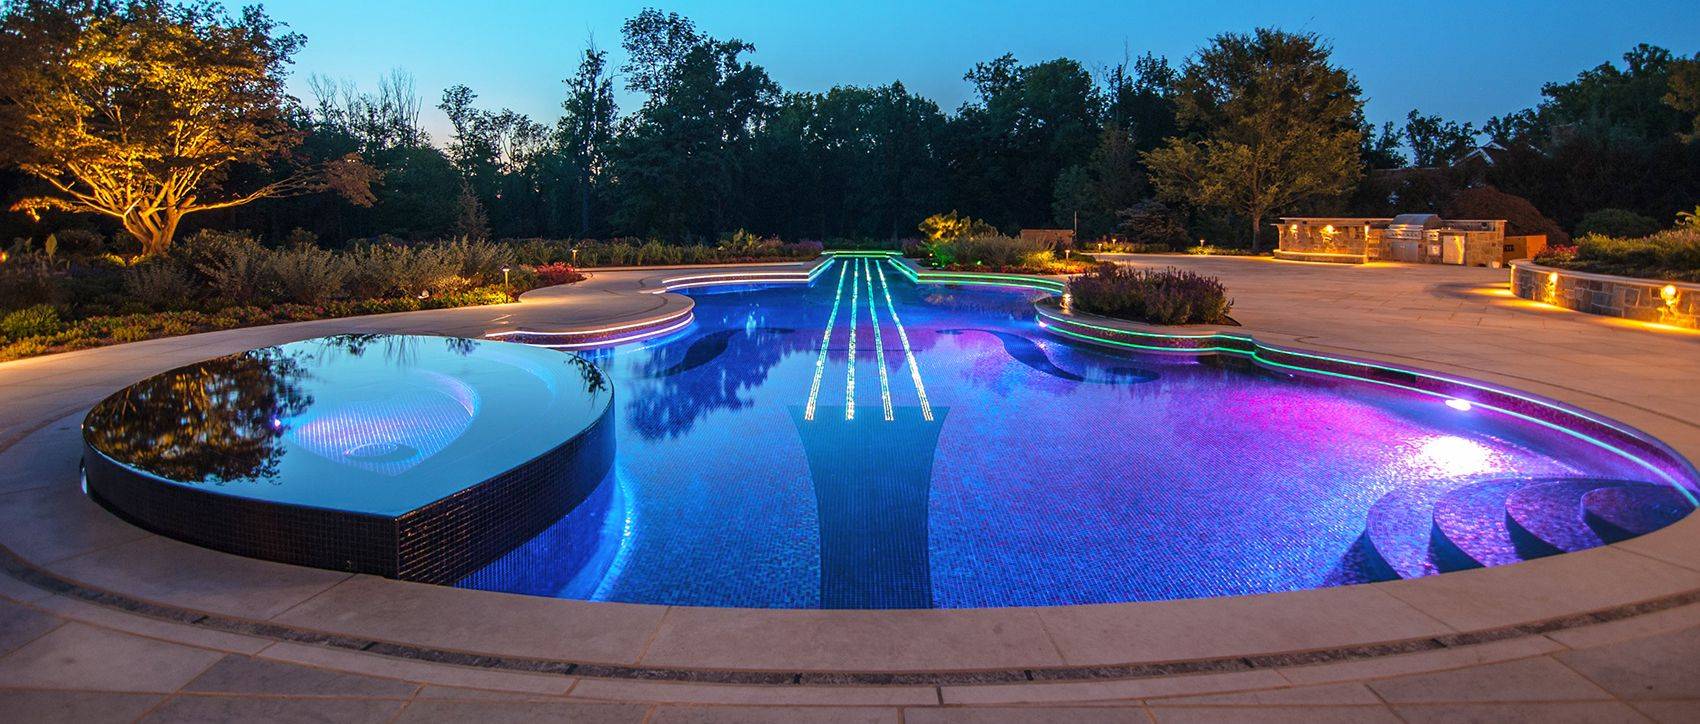 Освещение бассейна светодиодной лентой: фото, видео, схемы, способы